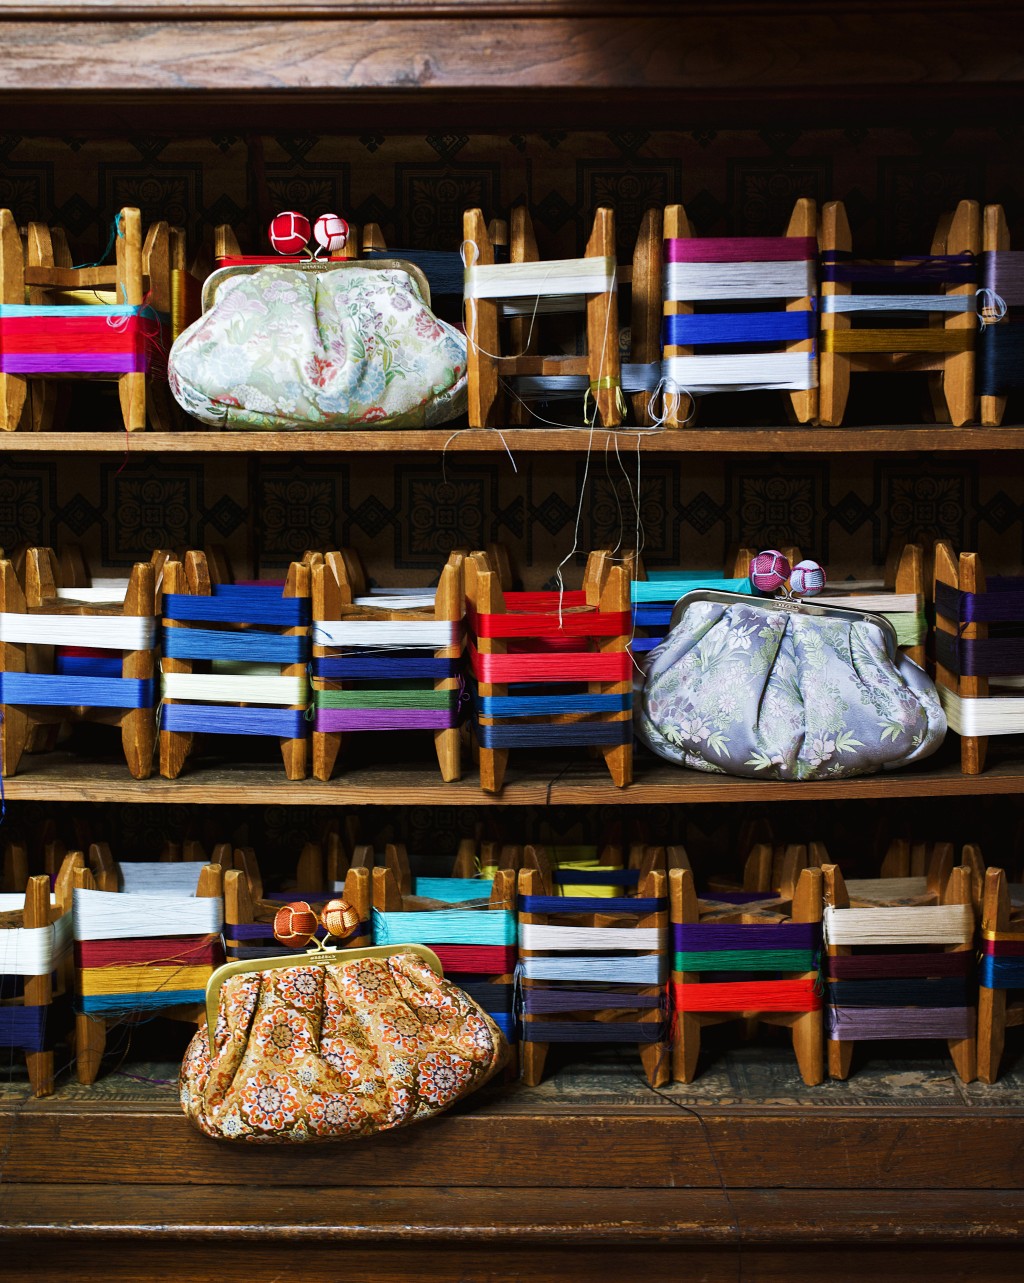 始创于1843年的布料制造商川岛织物晟坤，以生产用于制作优质和服腰带、正装与奢华室内装饰面料的精美丝绸而闻名于世。